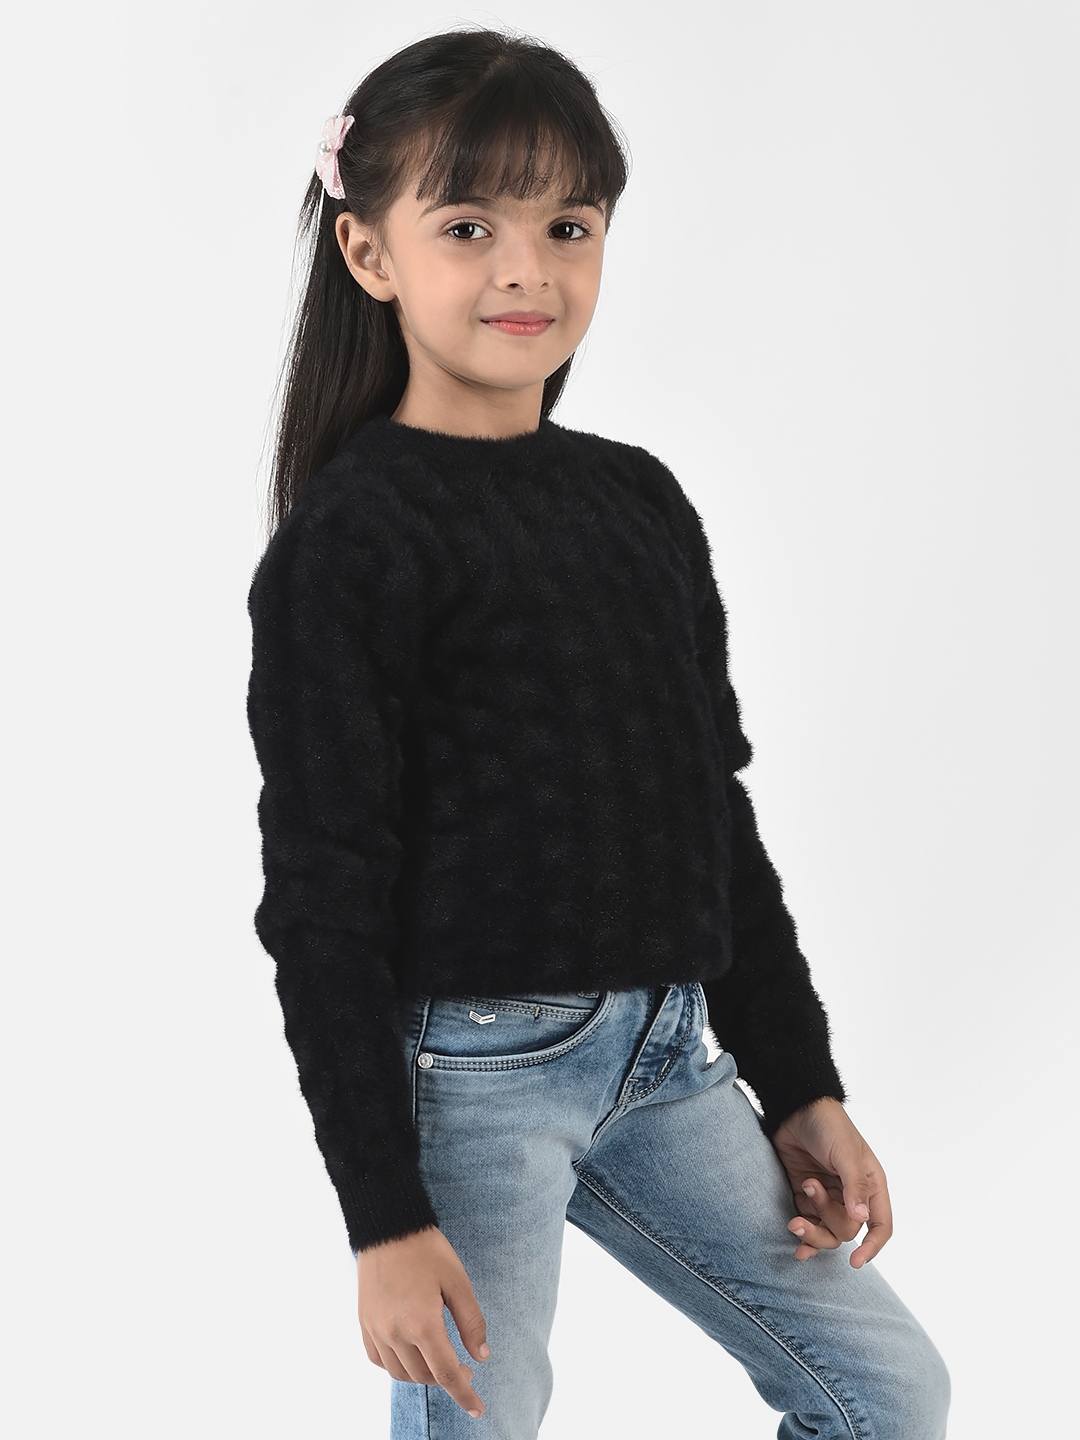 Crimsoune Club | Crimsoune Club Girls Black Sweater in Self-Designed Print 2